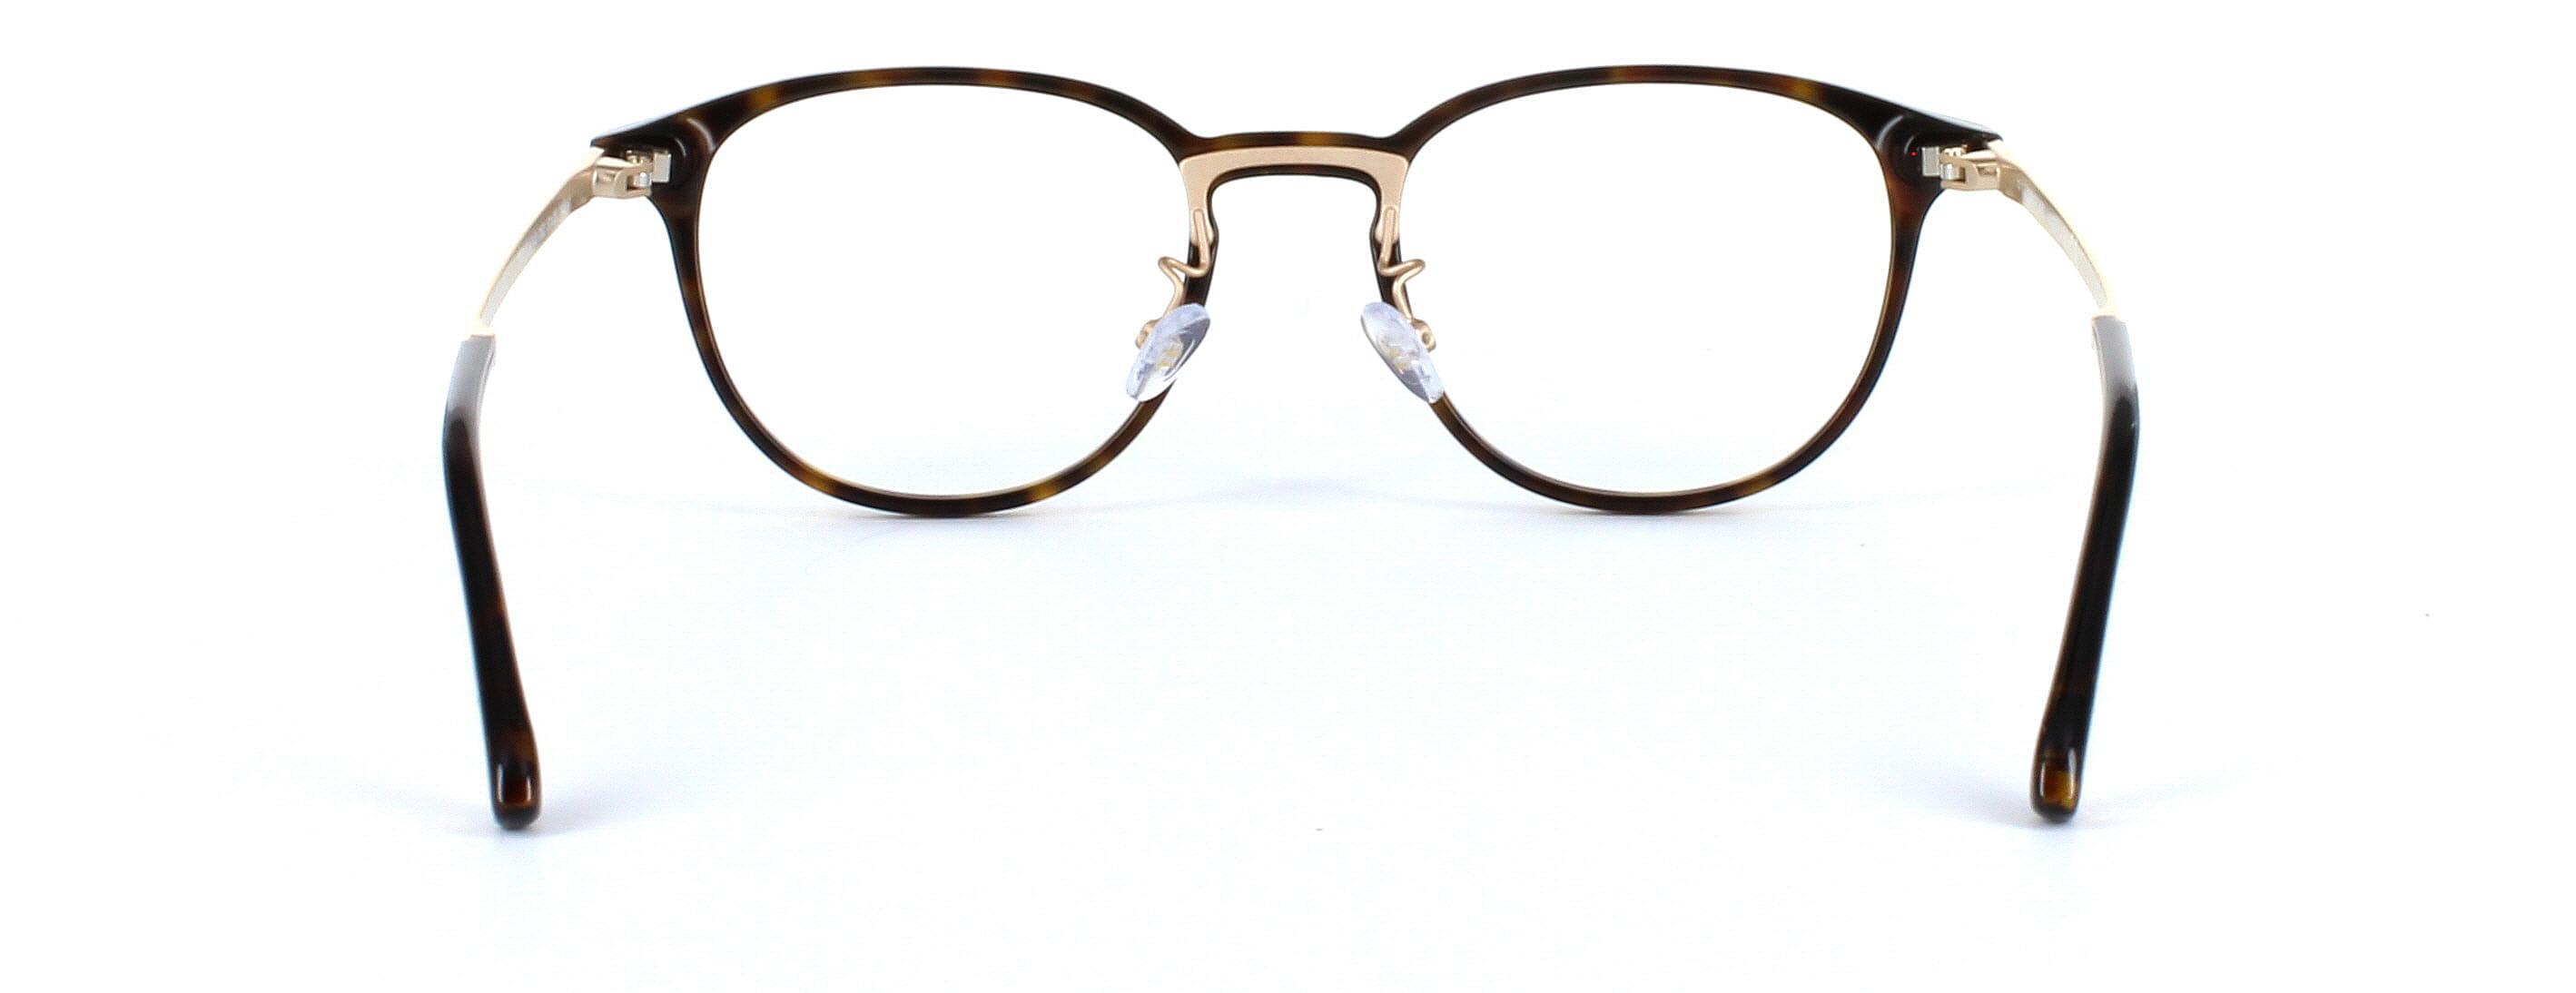 Tom Ford Glasses FT5593 - Tortoise - Image 3